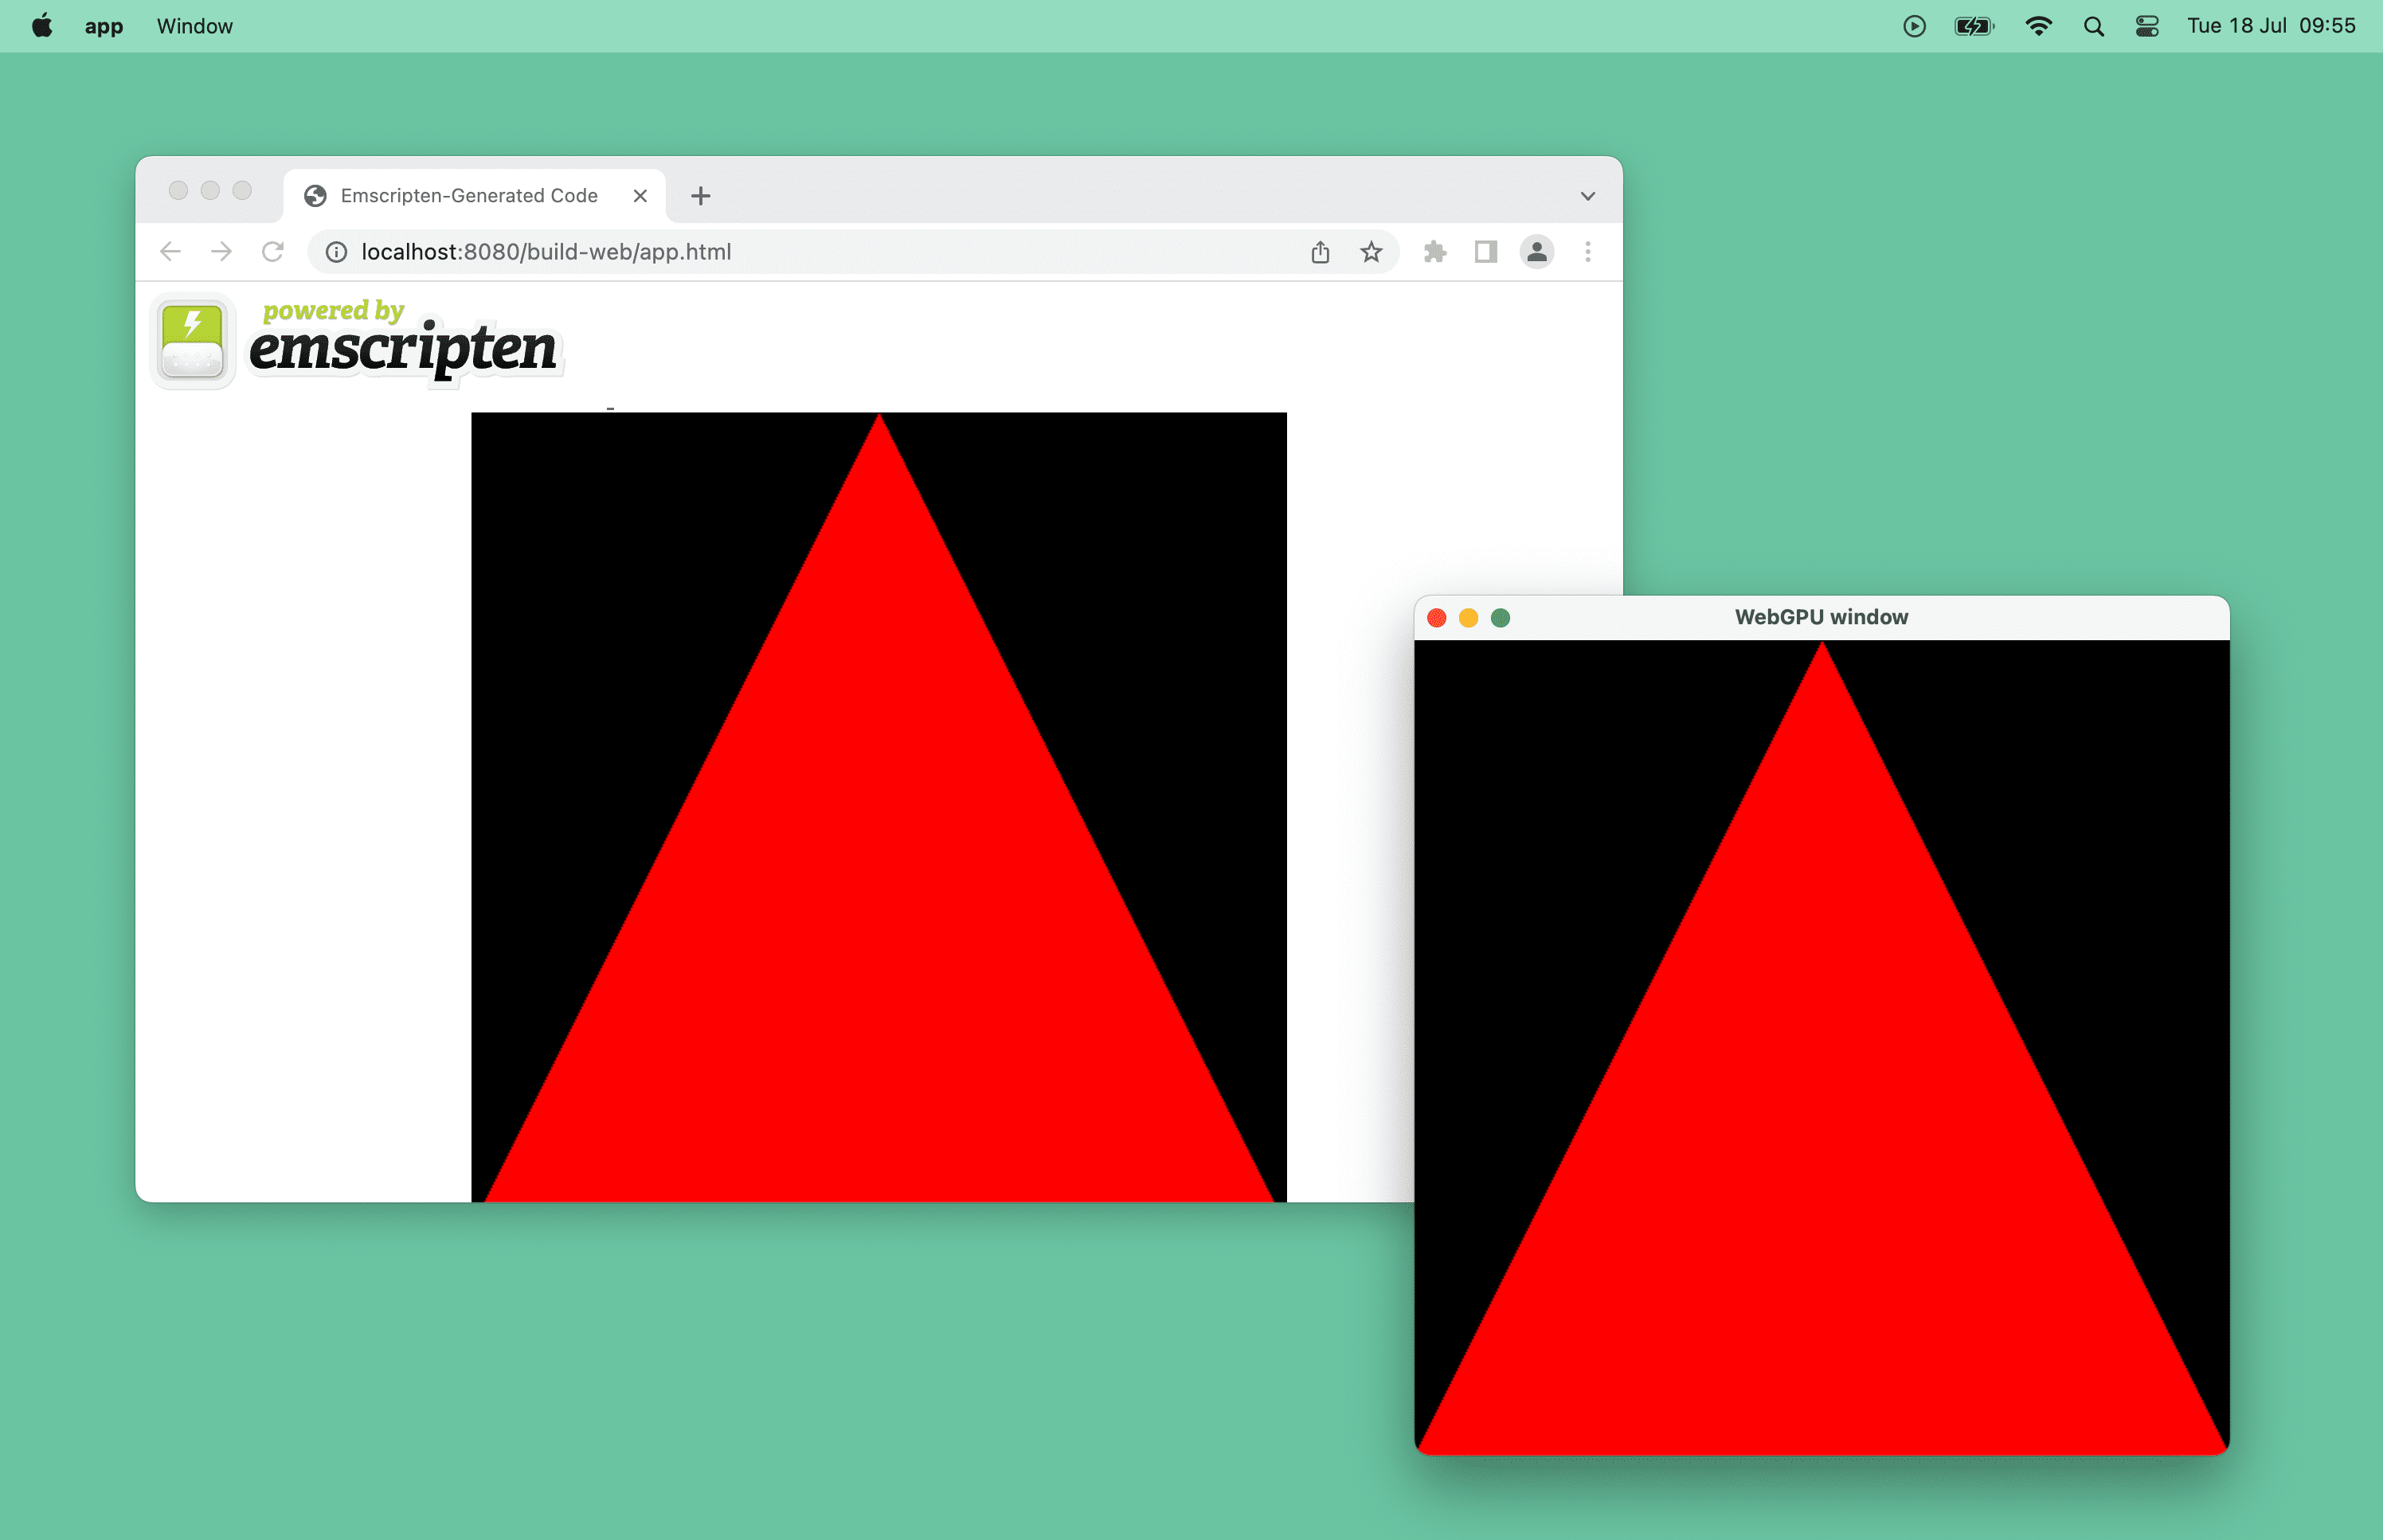 Captura de pantalla de un triángulo rojo con la tecnología de WebGPU en una ventana del navegador y una ventana de escritorio en macOS